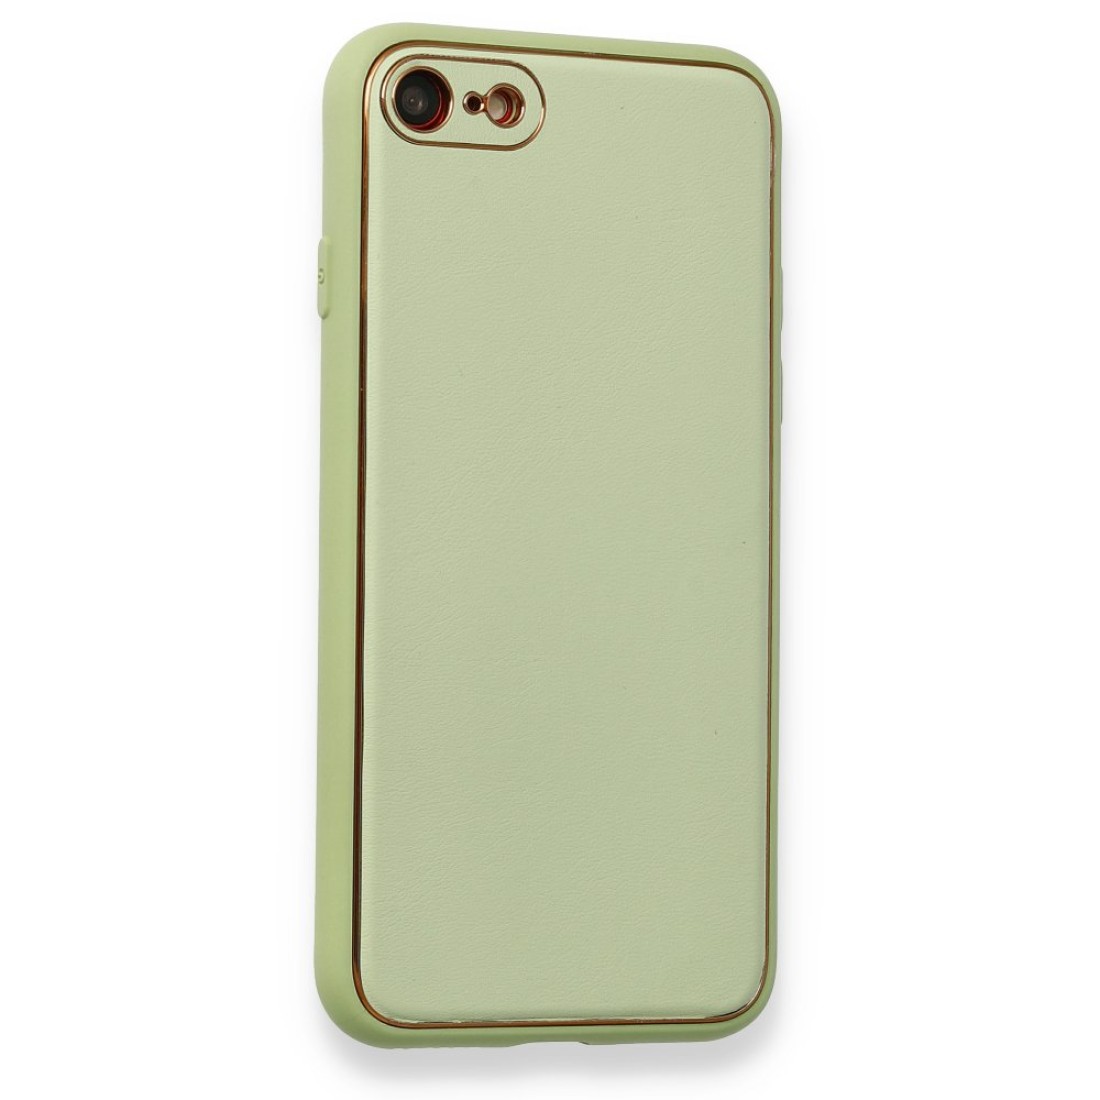 Apple iPhone 7 Kılıf Coco Deri Silikon Kapak - Açık Yeşil